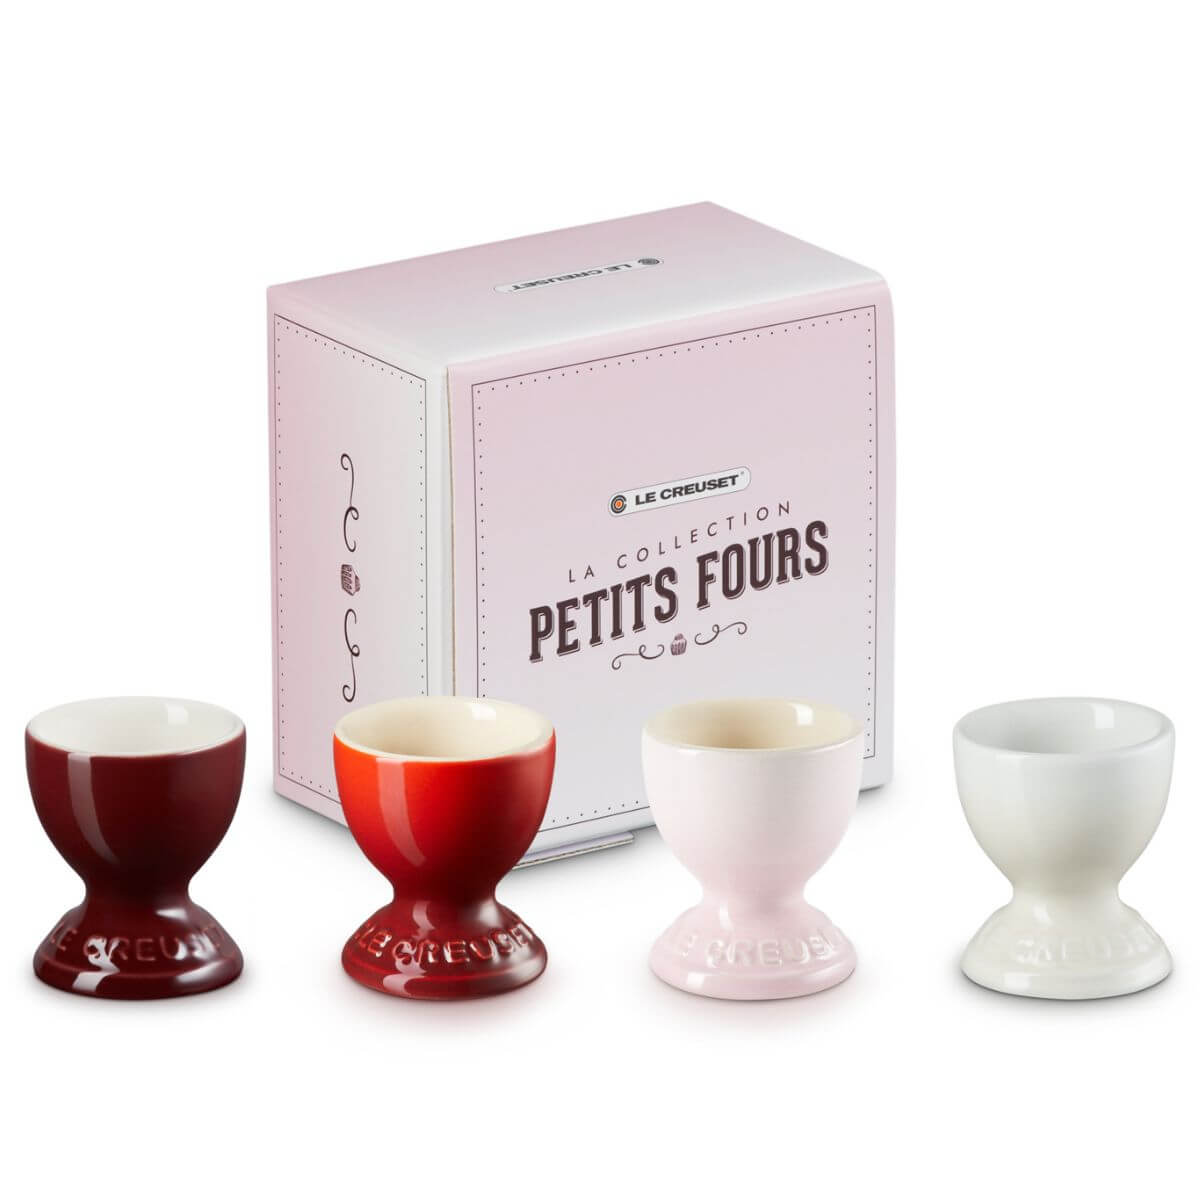 Le Creuset Petits Fours Egg Cups Set